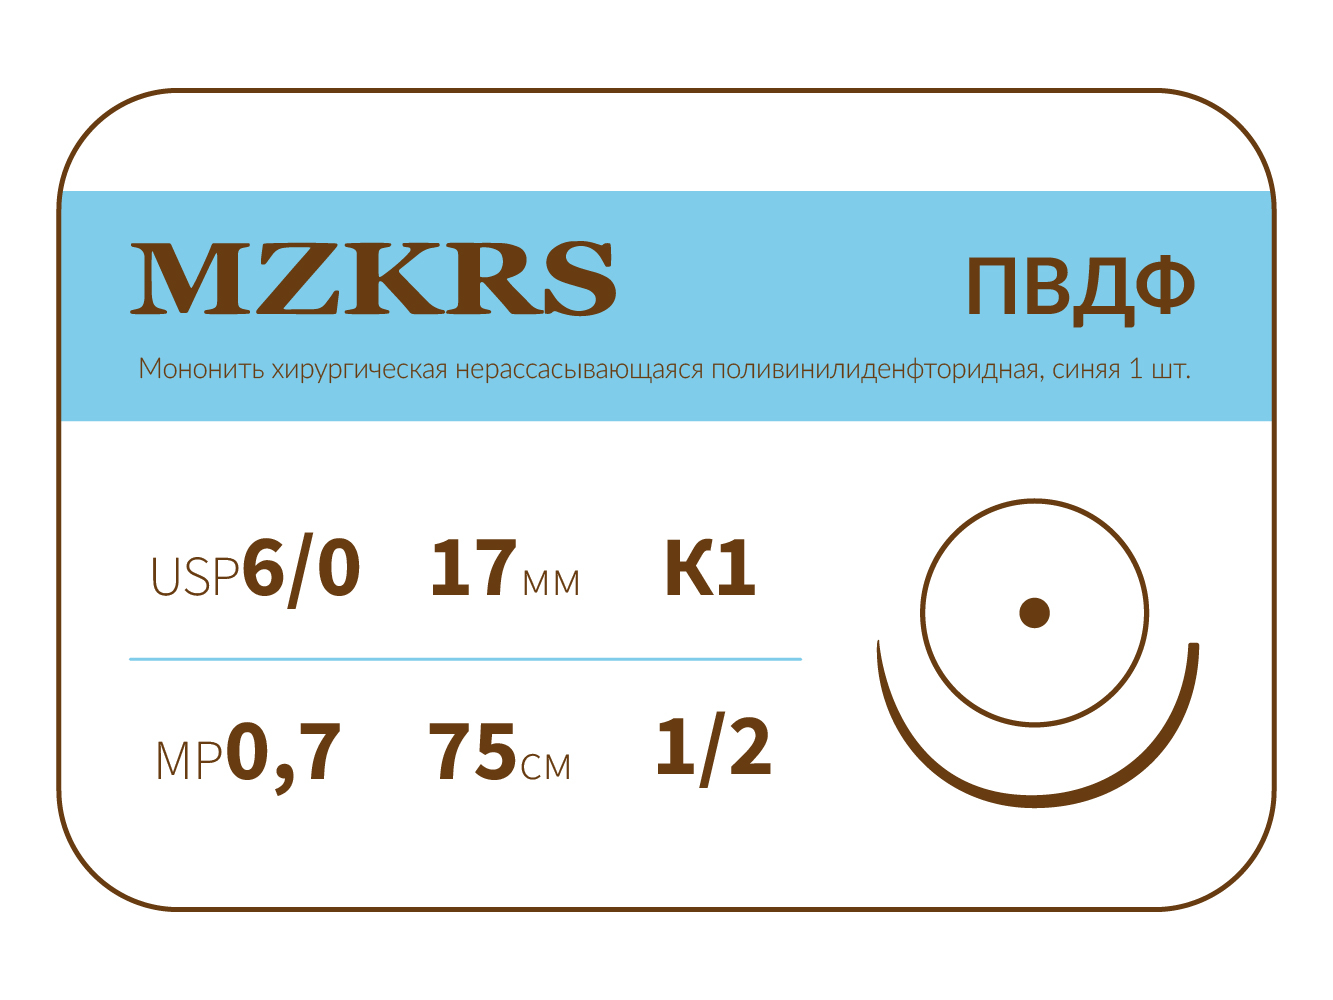 1712К1-Premium-6/0 (0.7)75 ПВДФ хирургическая нить поливинилиденфторидная, MZKRS (Россия)